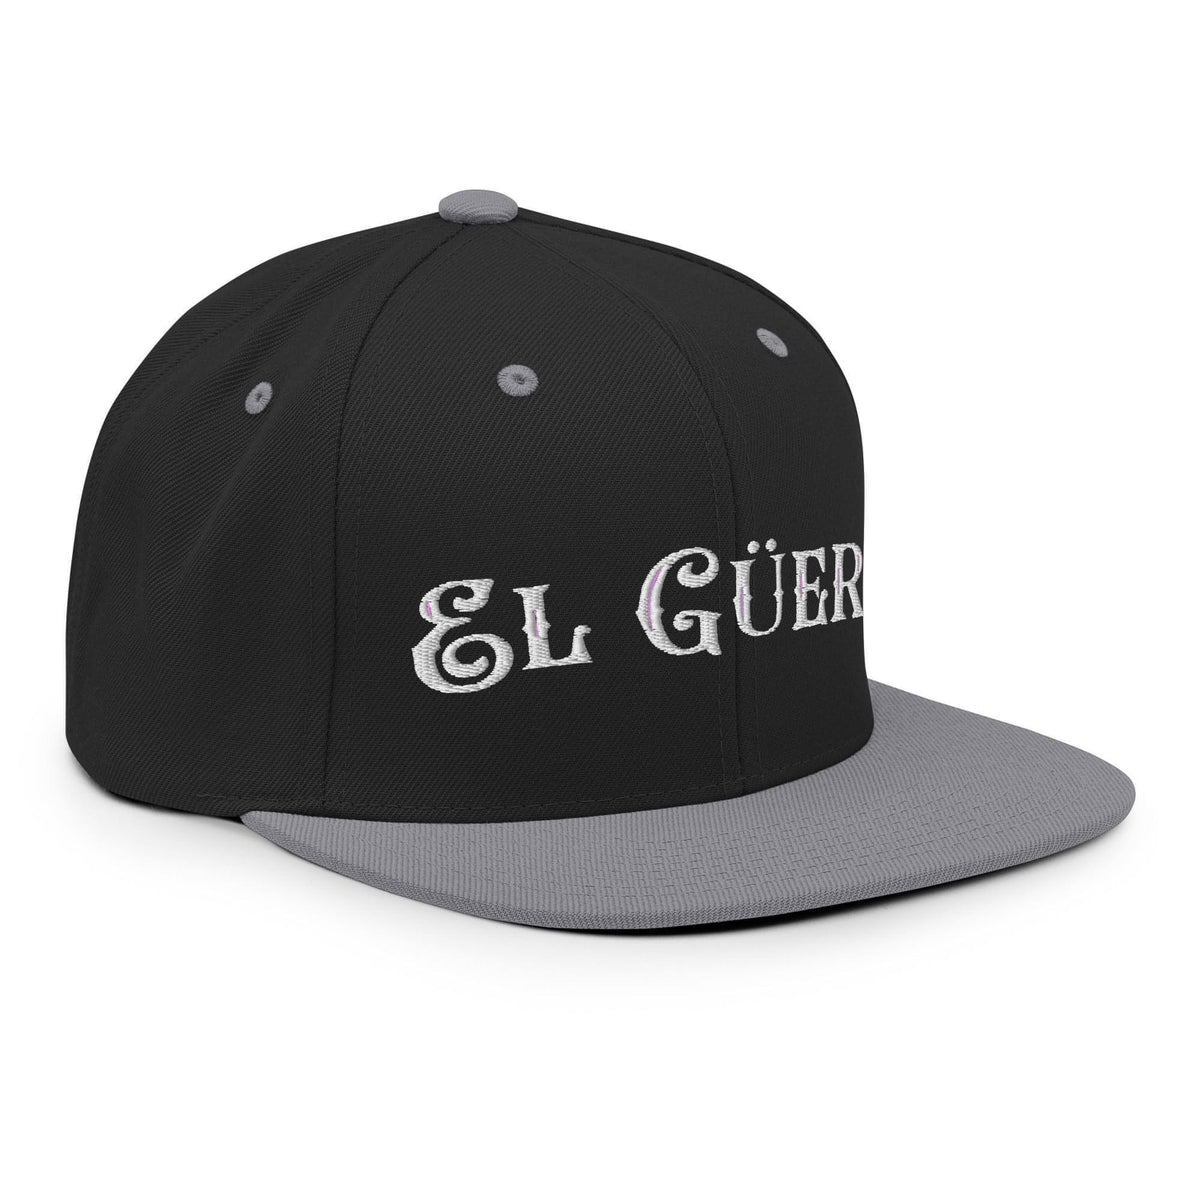 El Guero Snapback Hat